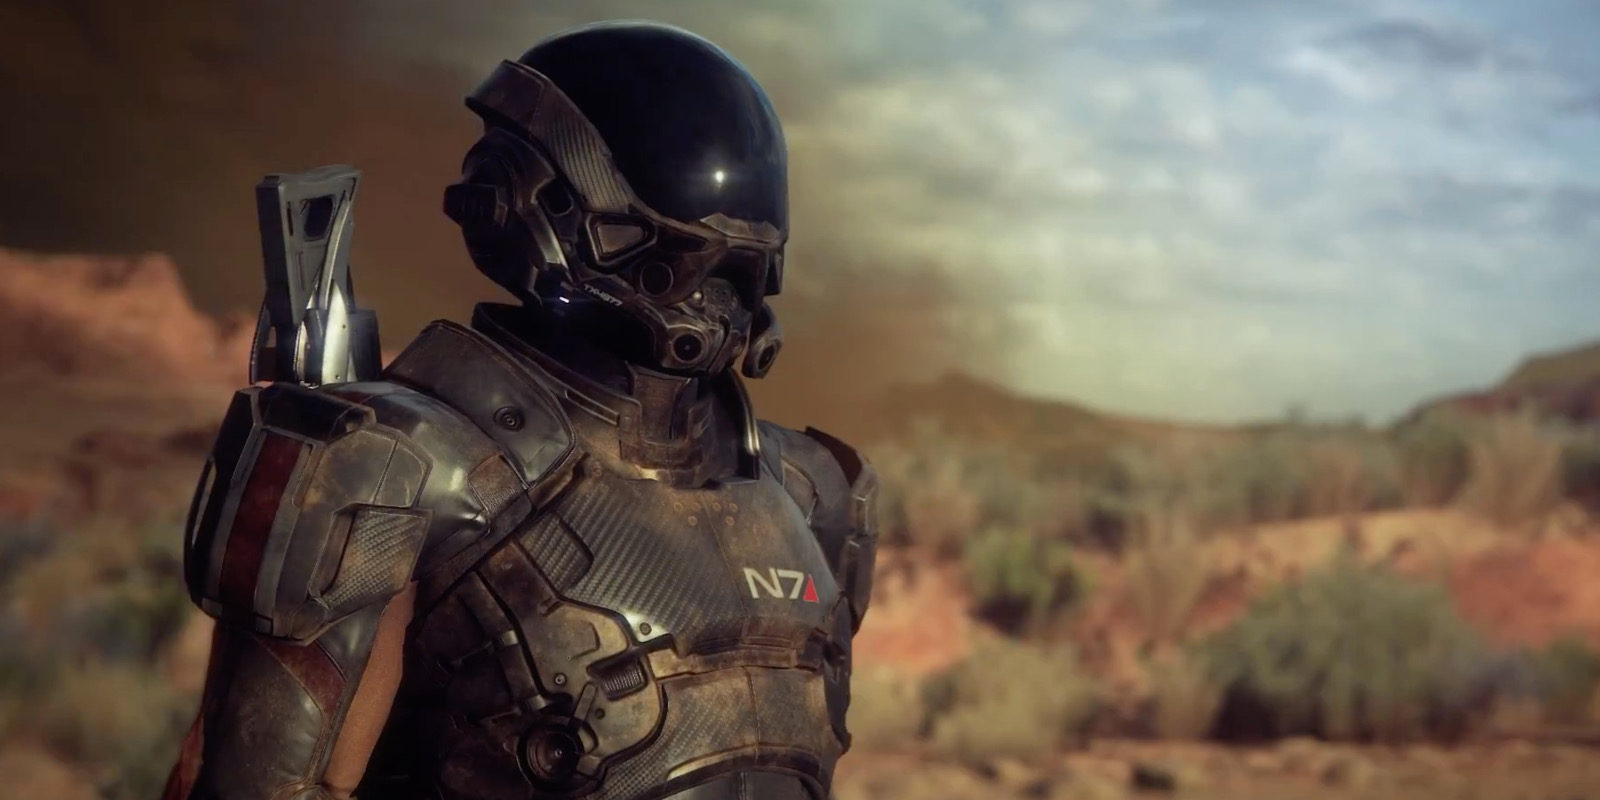 La customización del personaje en 'Mass Effect Andromeda' se muestra en estos 4 minutos de vídeo